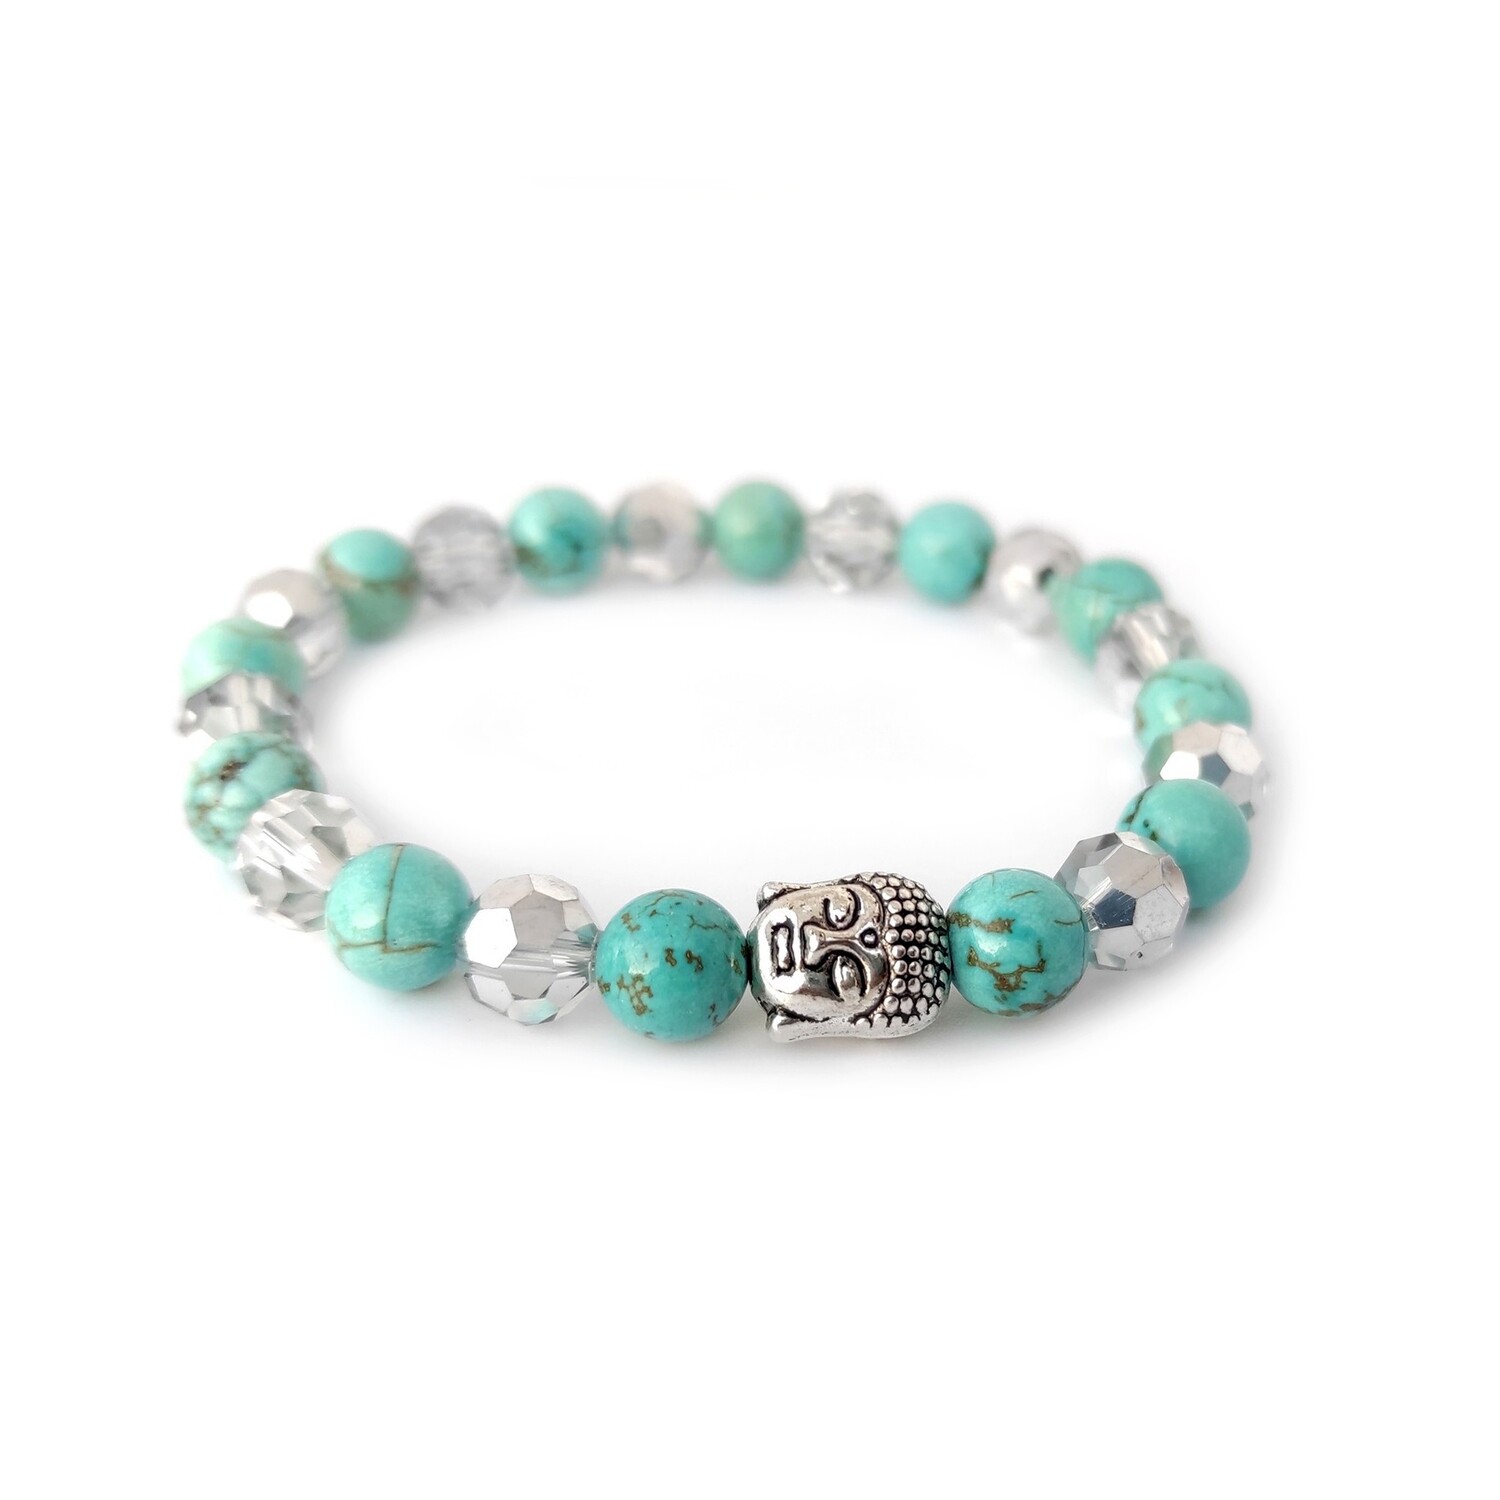 Turquoise gemstone with Buddha Charm bracelet